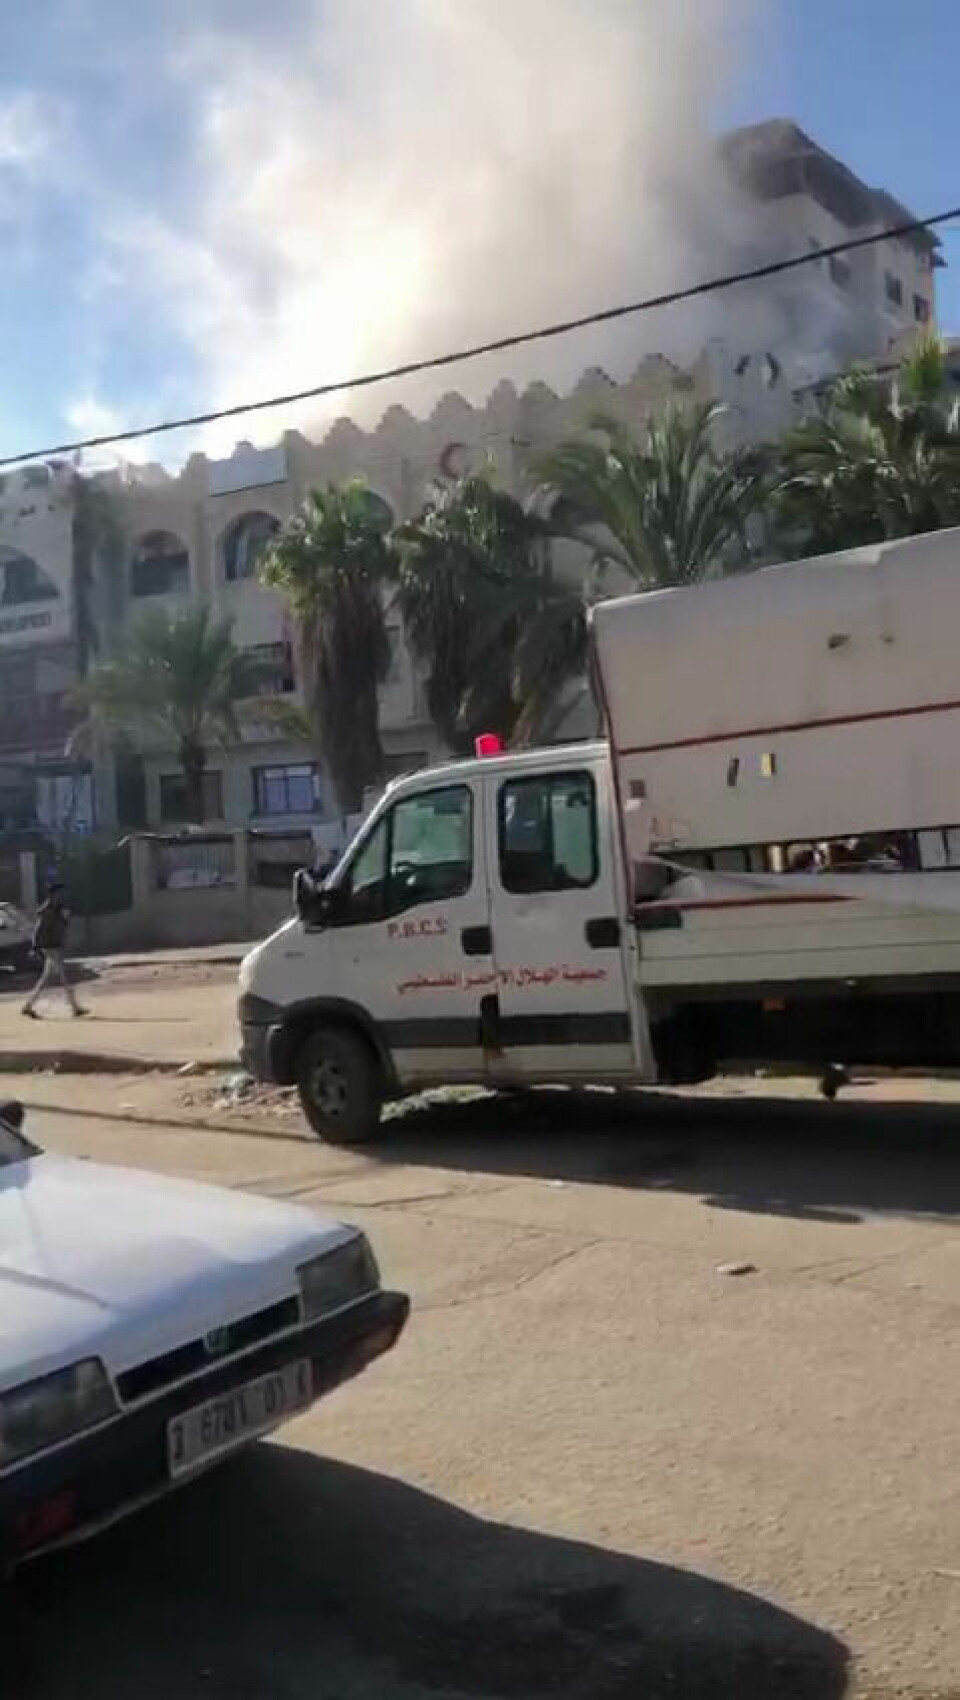 4. januar publiserte journalisten Hassan Aslih en video på Telegram. Faktisk Verifiserbar kan bekrefte at videoen viser Al-Amal sykehus samme dagen.